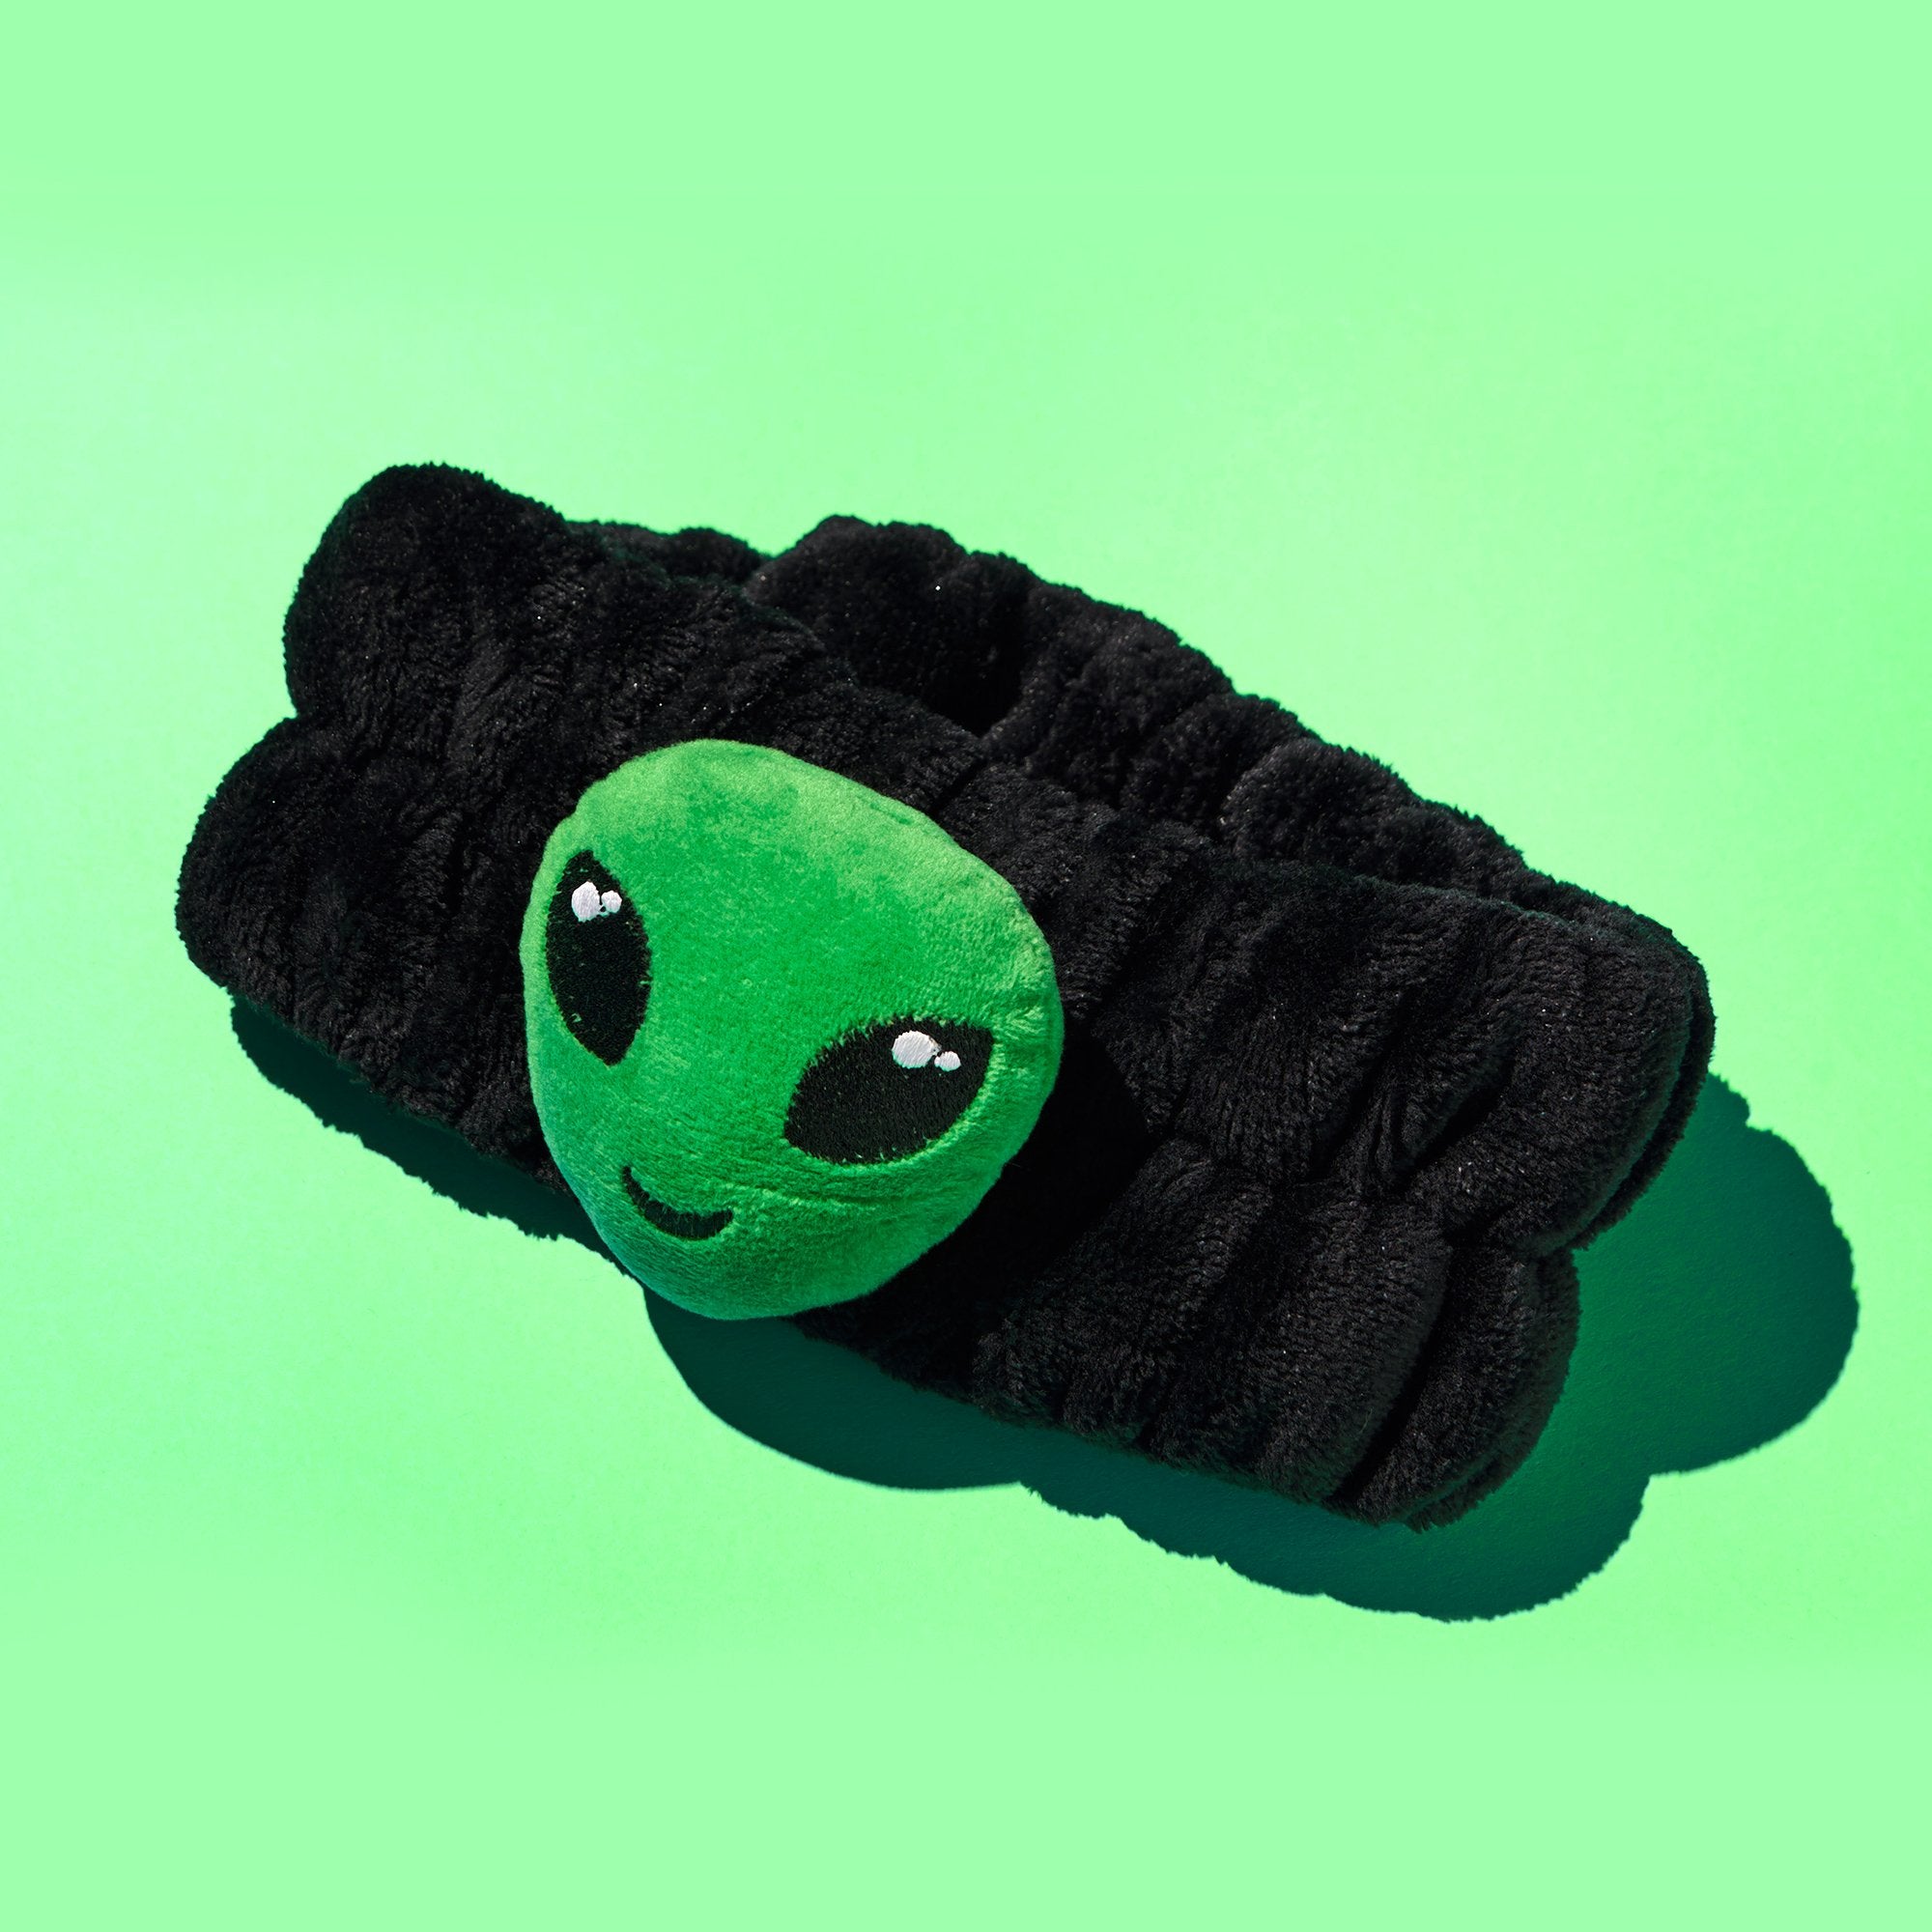 3D Teddy Headyband - Alien Headbands The Crème Shop 